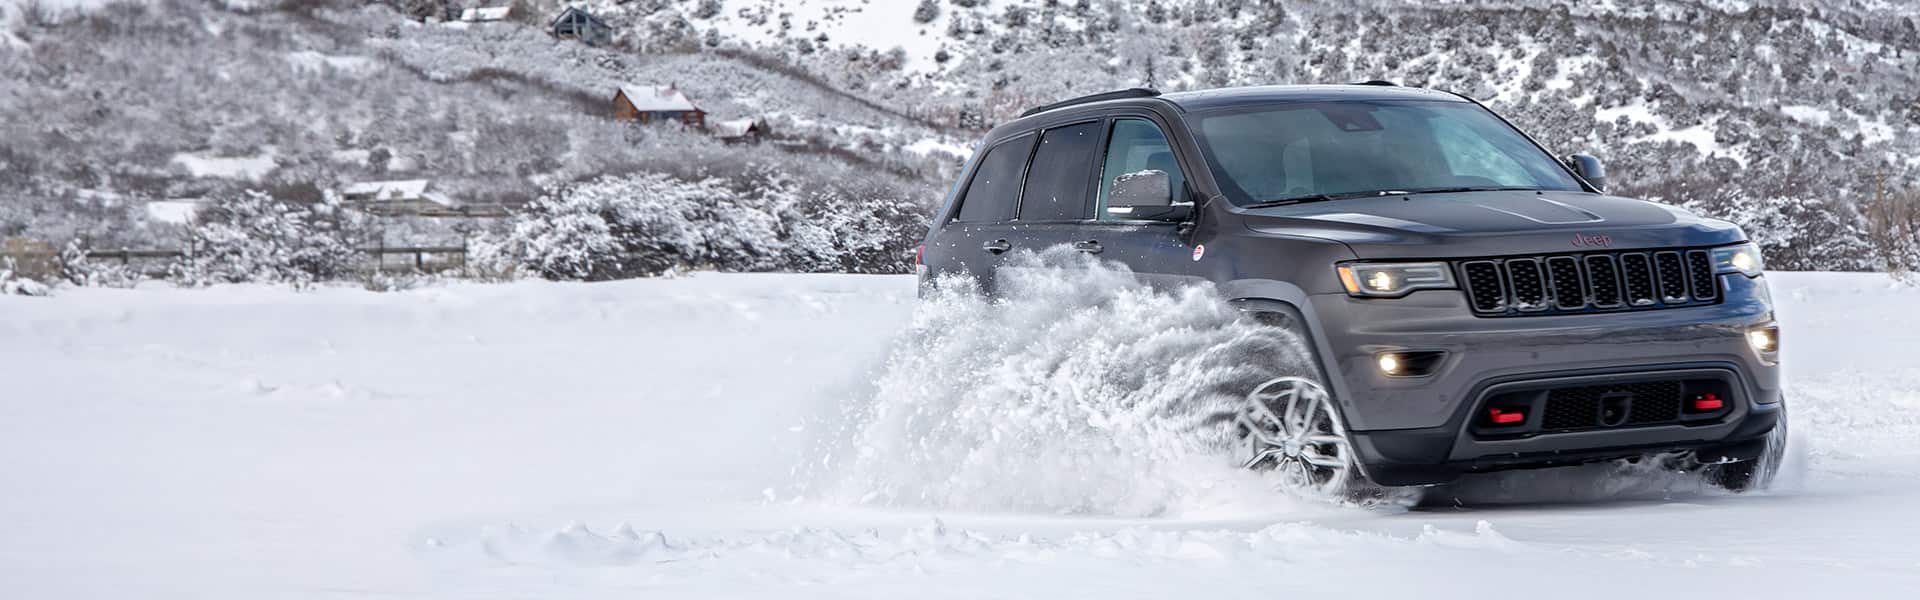 Un Jeep Grand Cherokee Trailhawk 2021 andando fuera de la carretera en invierno, con chorros de nieve oscureciendo sus ruedas.